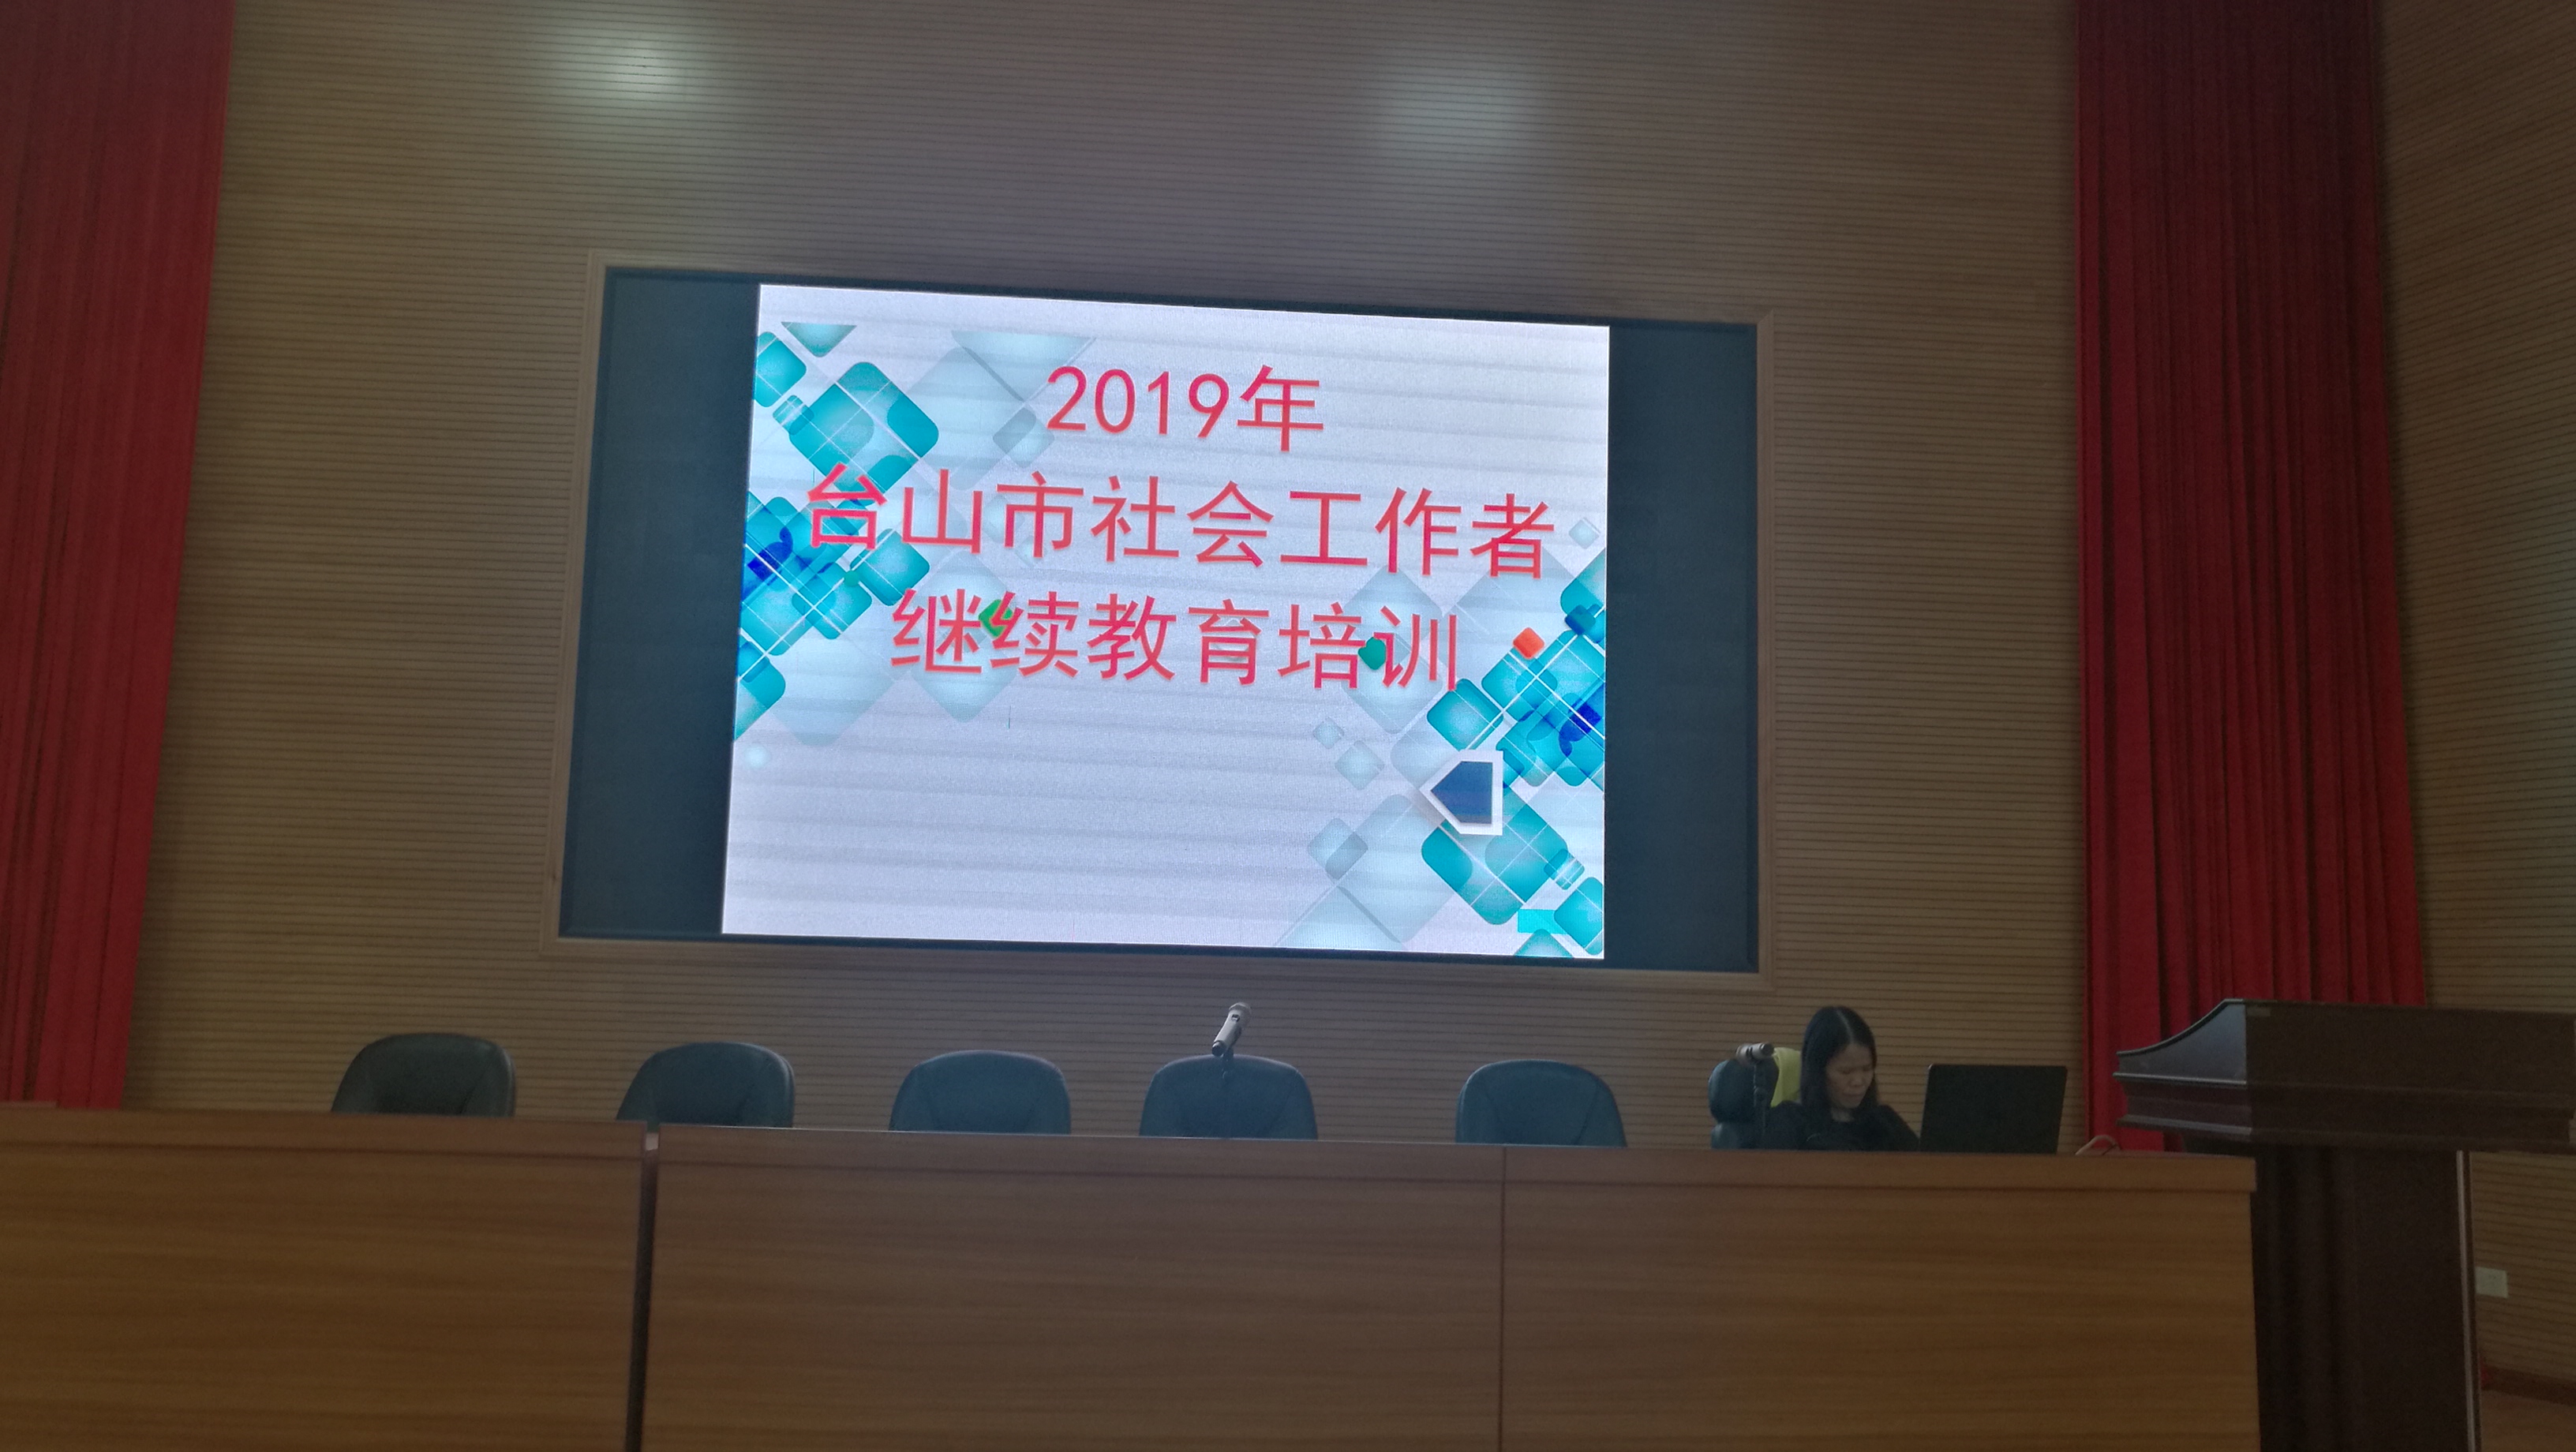 台山市举办2019年度社工继续教育培训